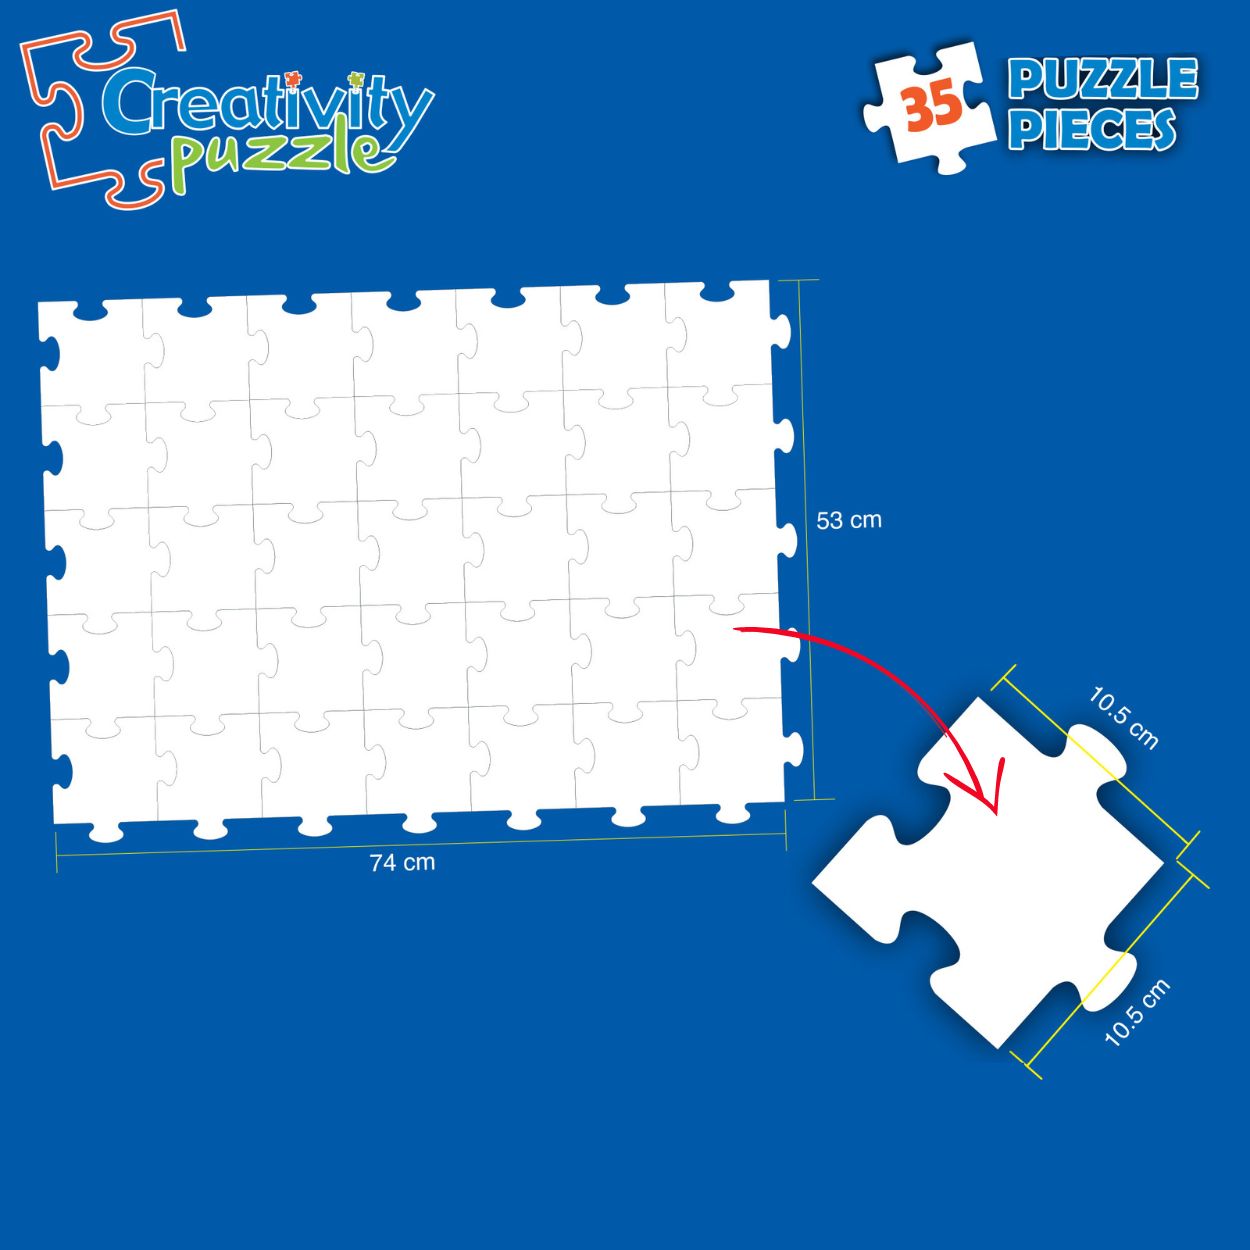 Creativity Puzzle(Non Erasable) White Blank Puzzle